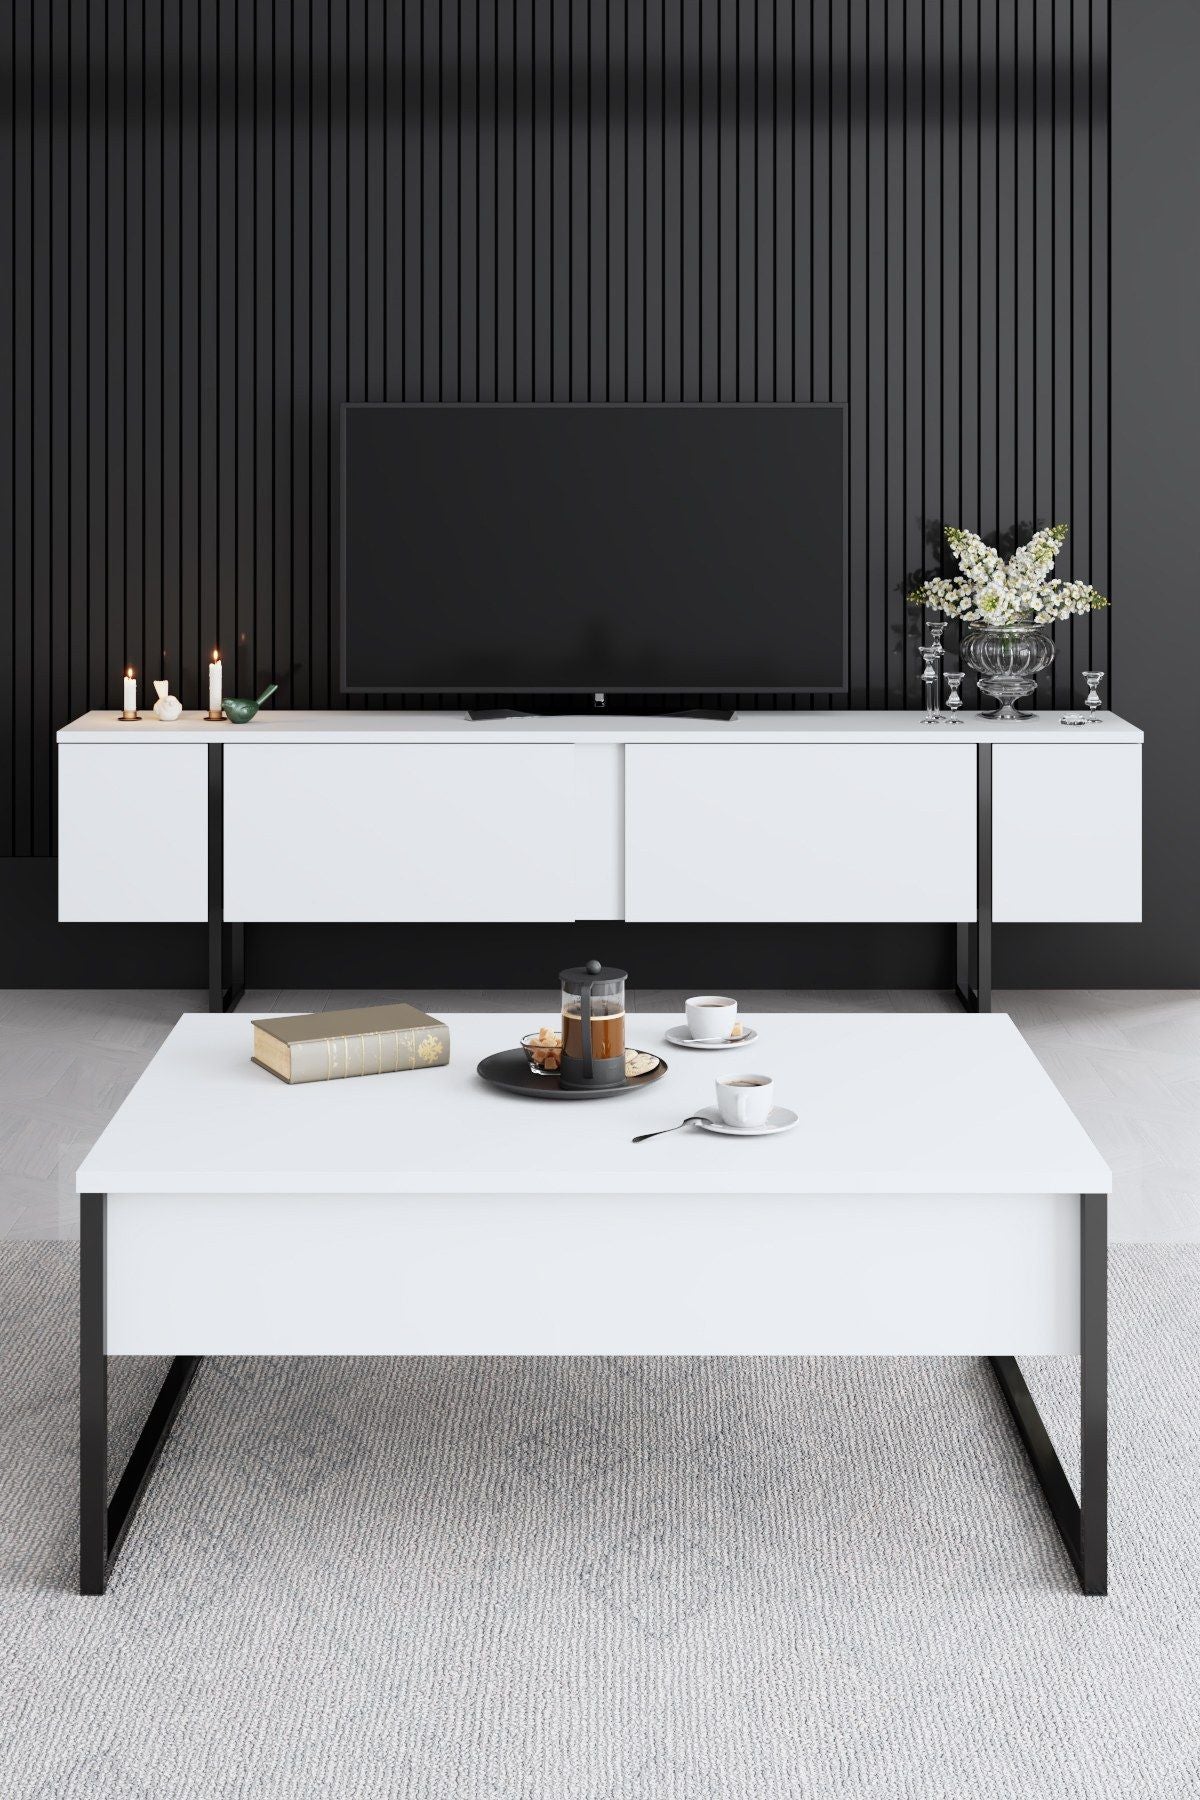 Luxe - Hvid, Sort Stue møbel sæt Hvid sort